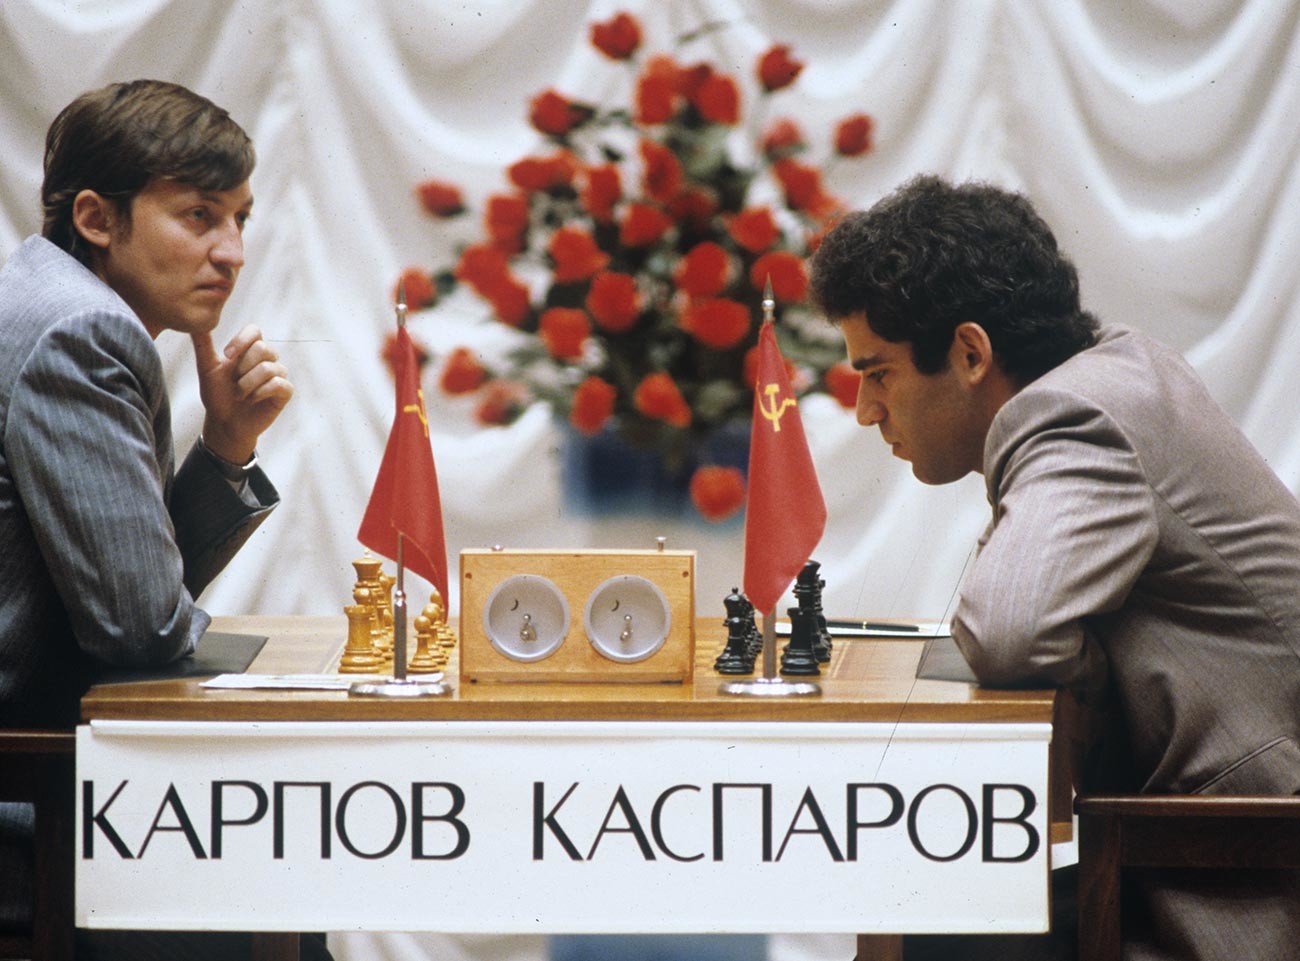 Kasparov with karpov